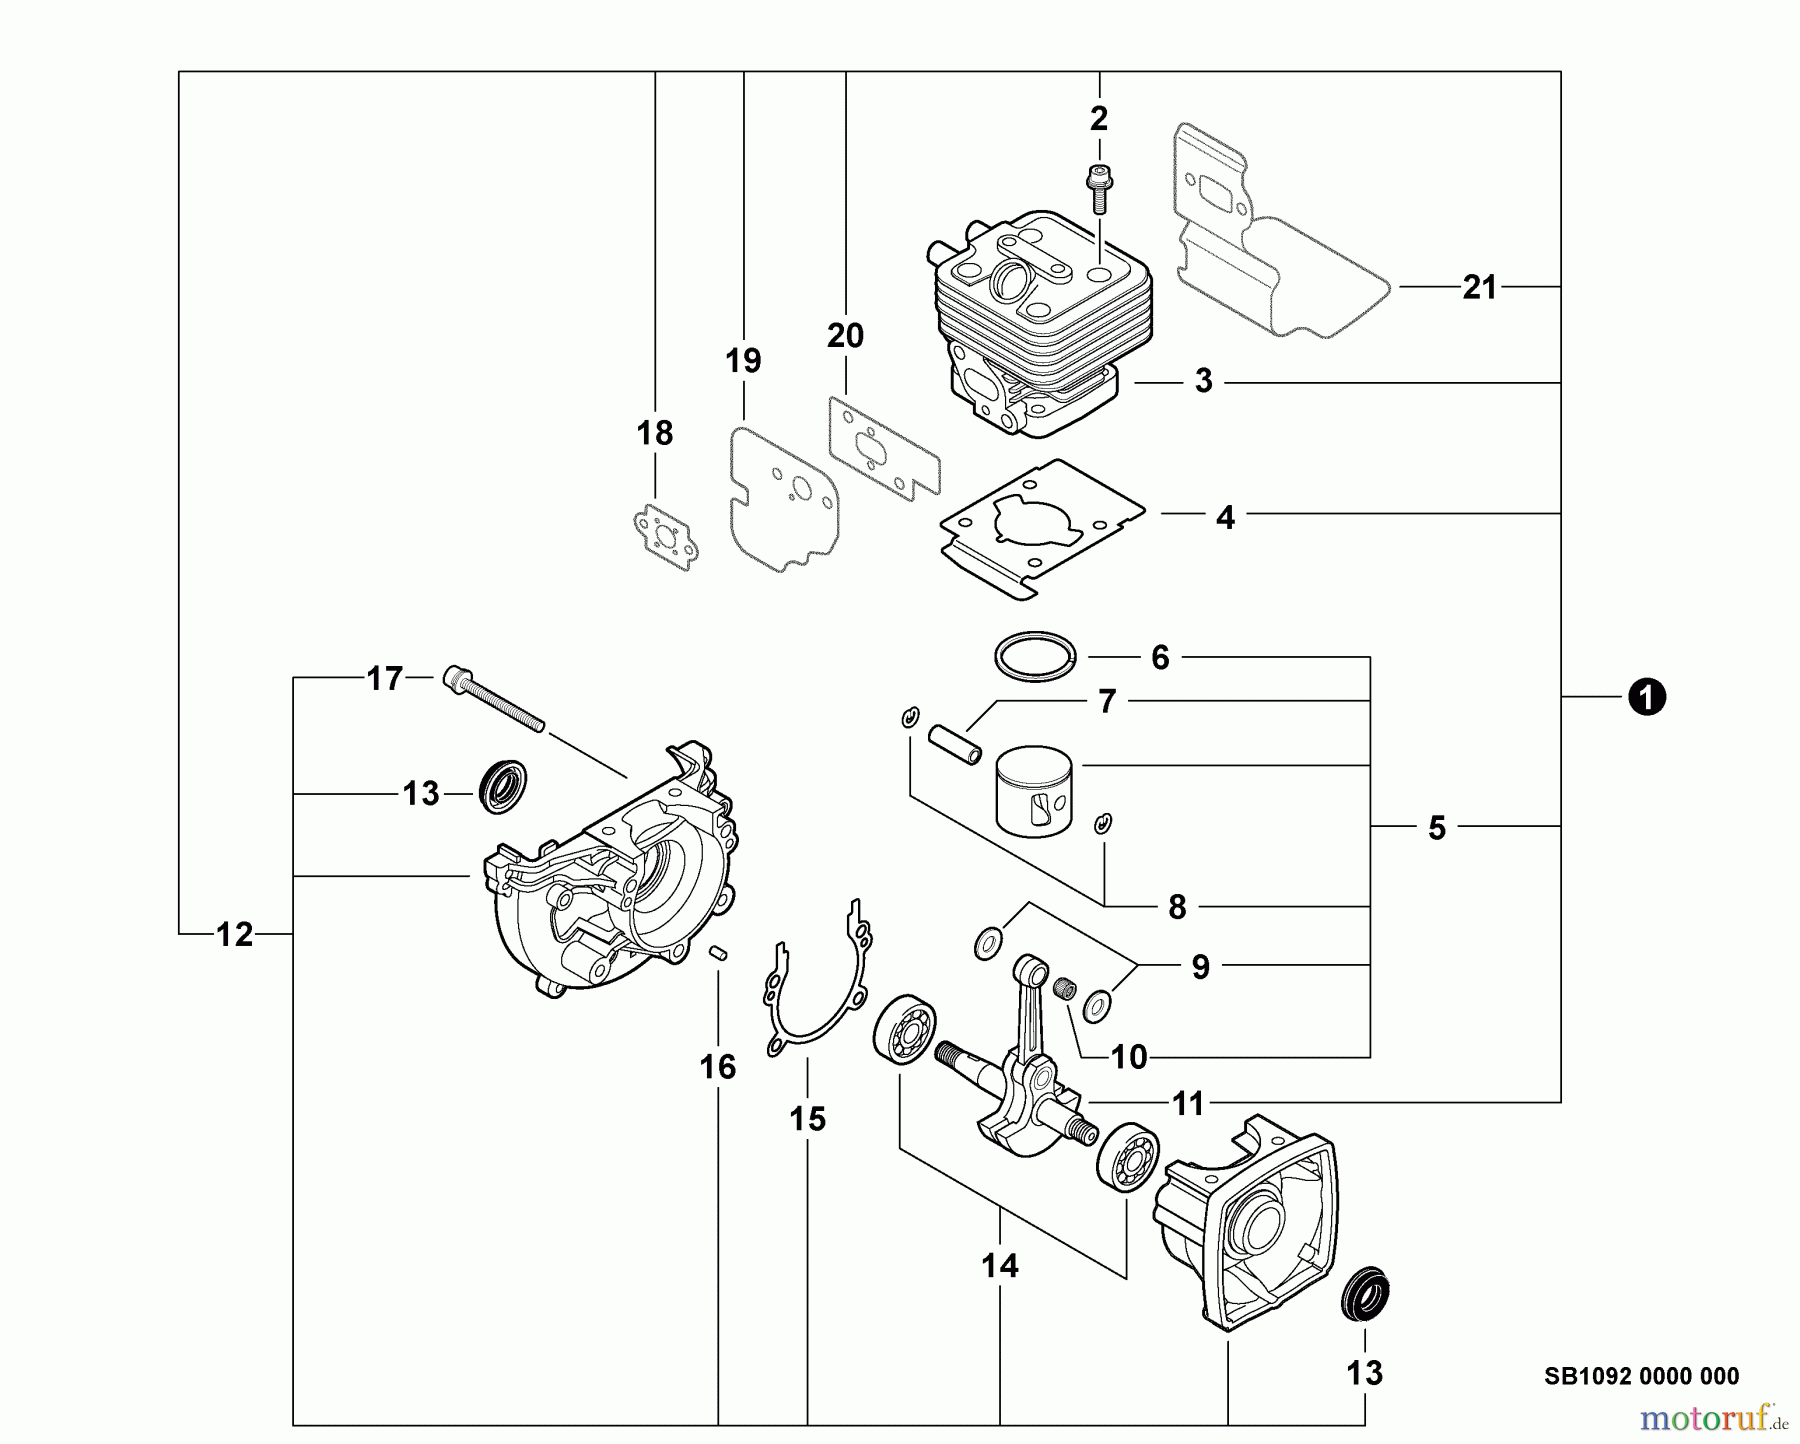  Echo Bläser / Sauger / Häcksler / Mulchgeräte	 PB-255LN - Echo Blower/Vacuums, S/N: P35012001001 - P35012999999 Engine, Short Block -- SB1092